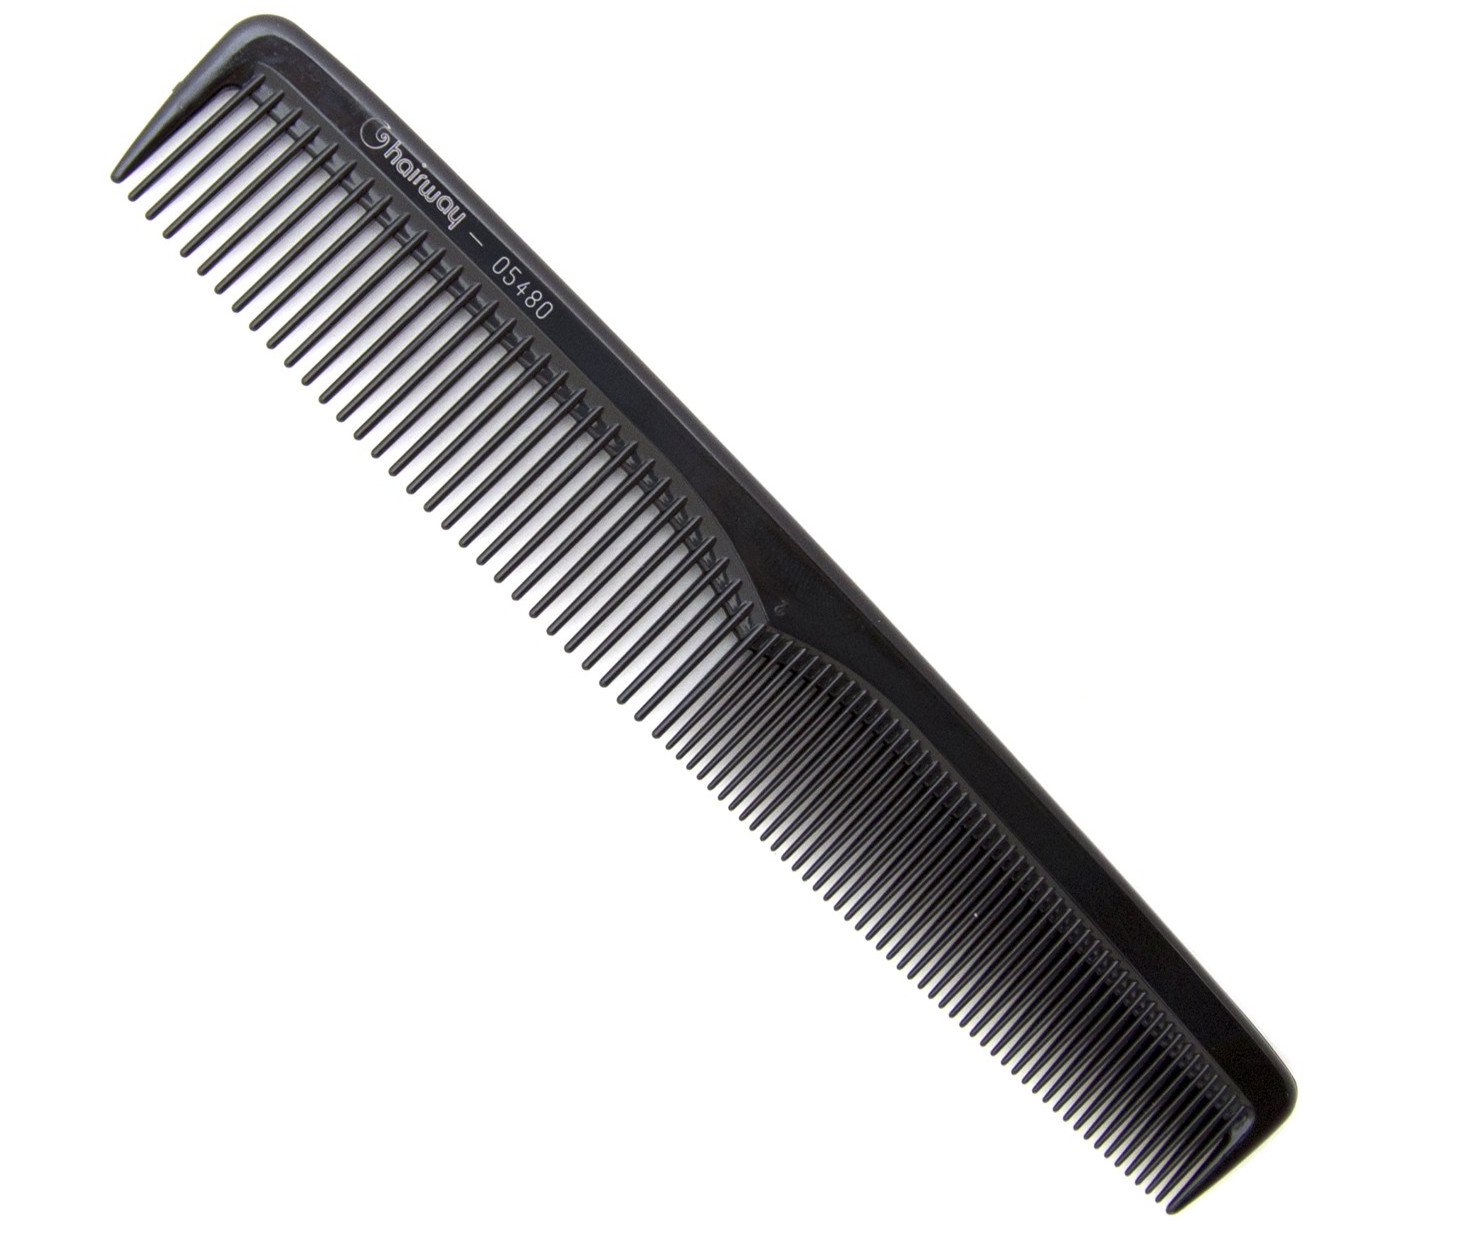 Hřeben na stříhání vlasů Hairway Excellence 05480 - 175 mm